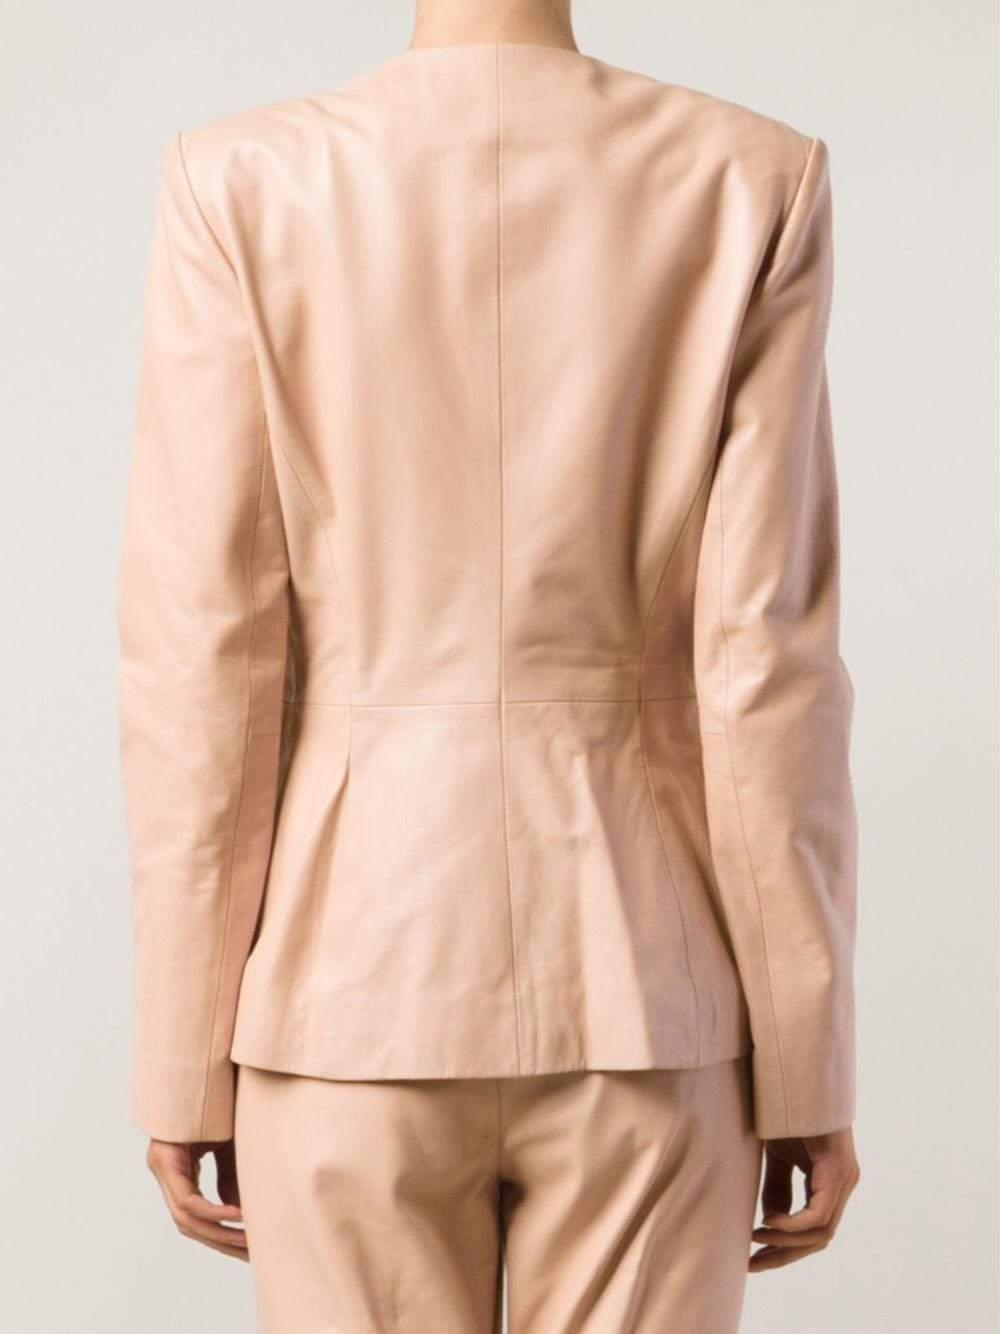 Leather Jacket With Rose Gold CLOTHINGJACKETMISC PHILOSOPHY   